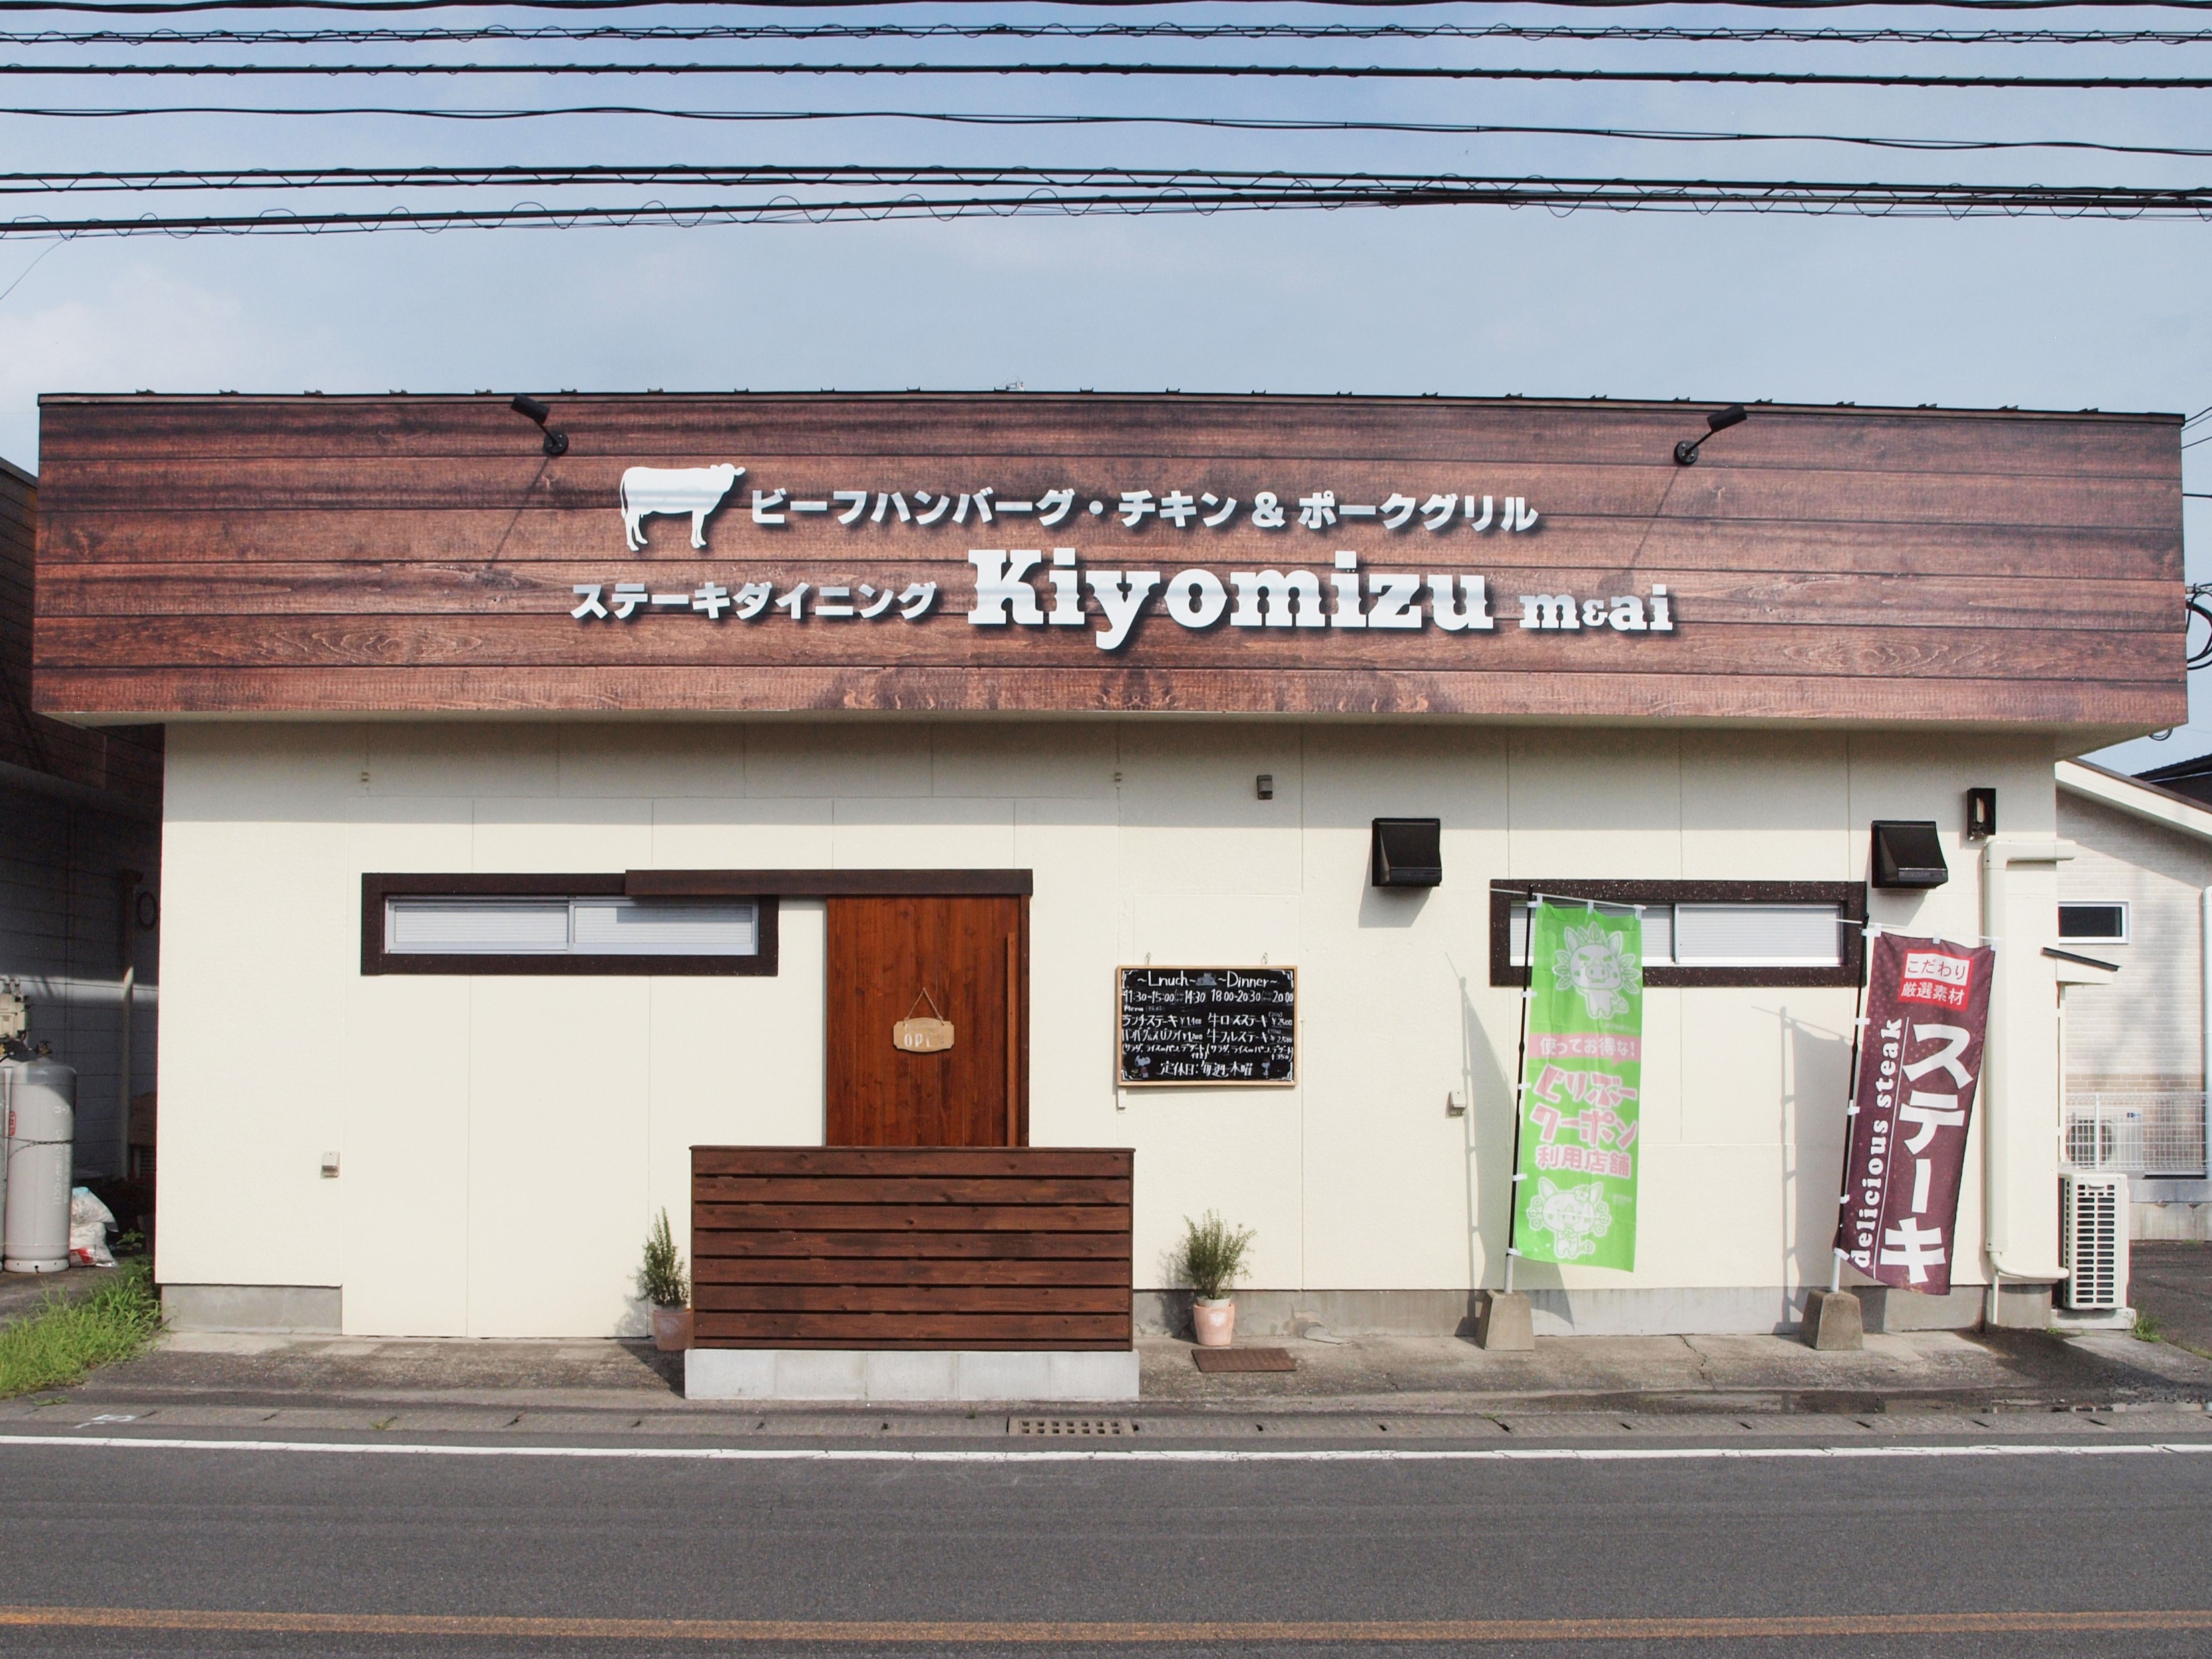 <b>【ステーキダイニング Kiyomizu m&ai】</b>今日はがっつりお肉が食べたい！そんな時には網焼きが食欲をそそるステーキ店へ